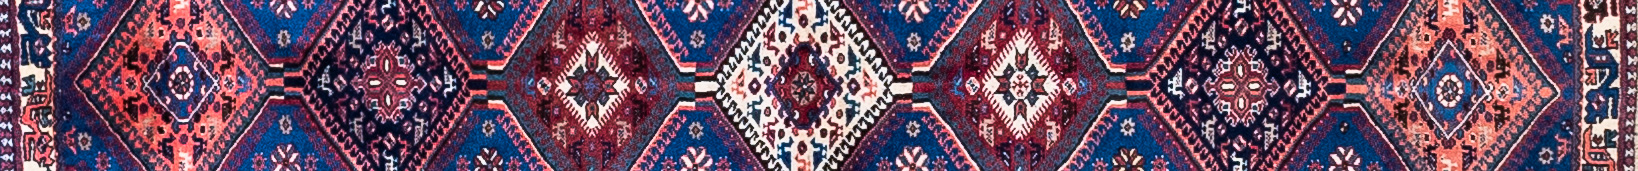 Yalameh Persian Carpet Rug N1Carpet Canada Montreal Tapis Persan 950